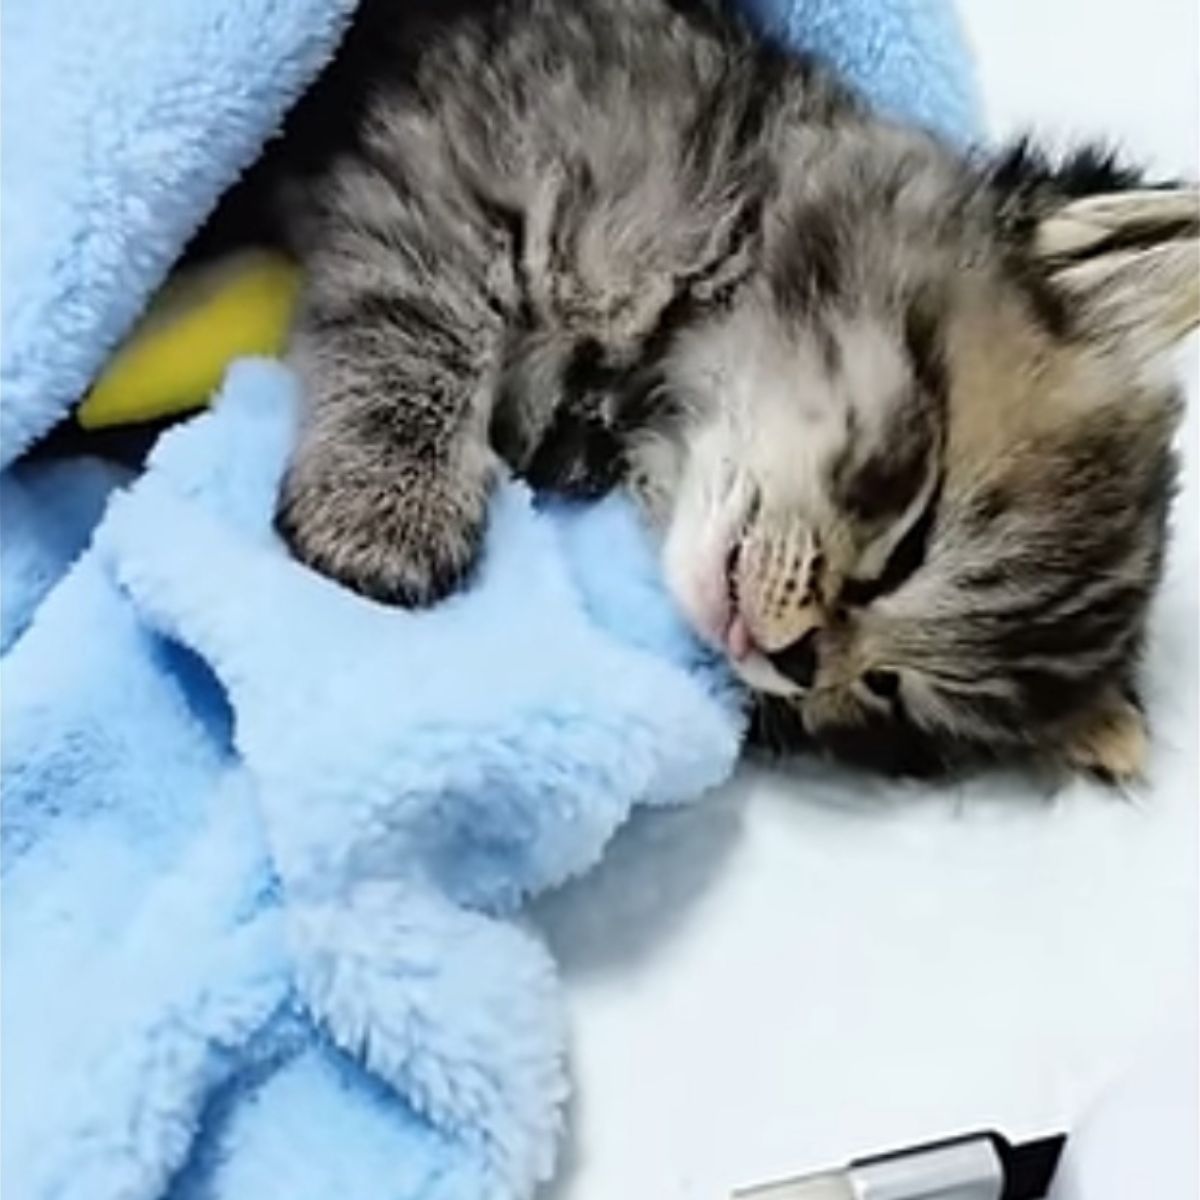 sweet kitten laying